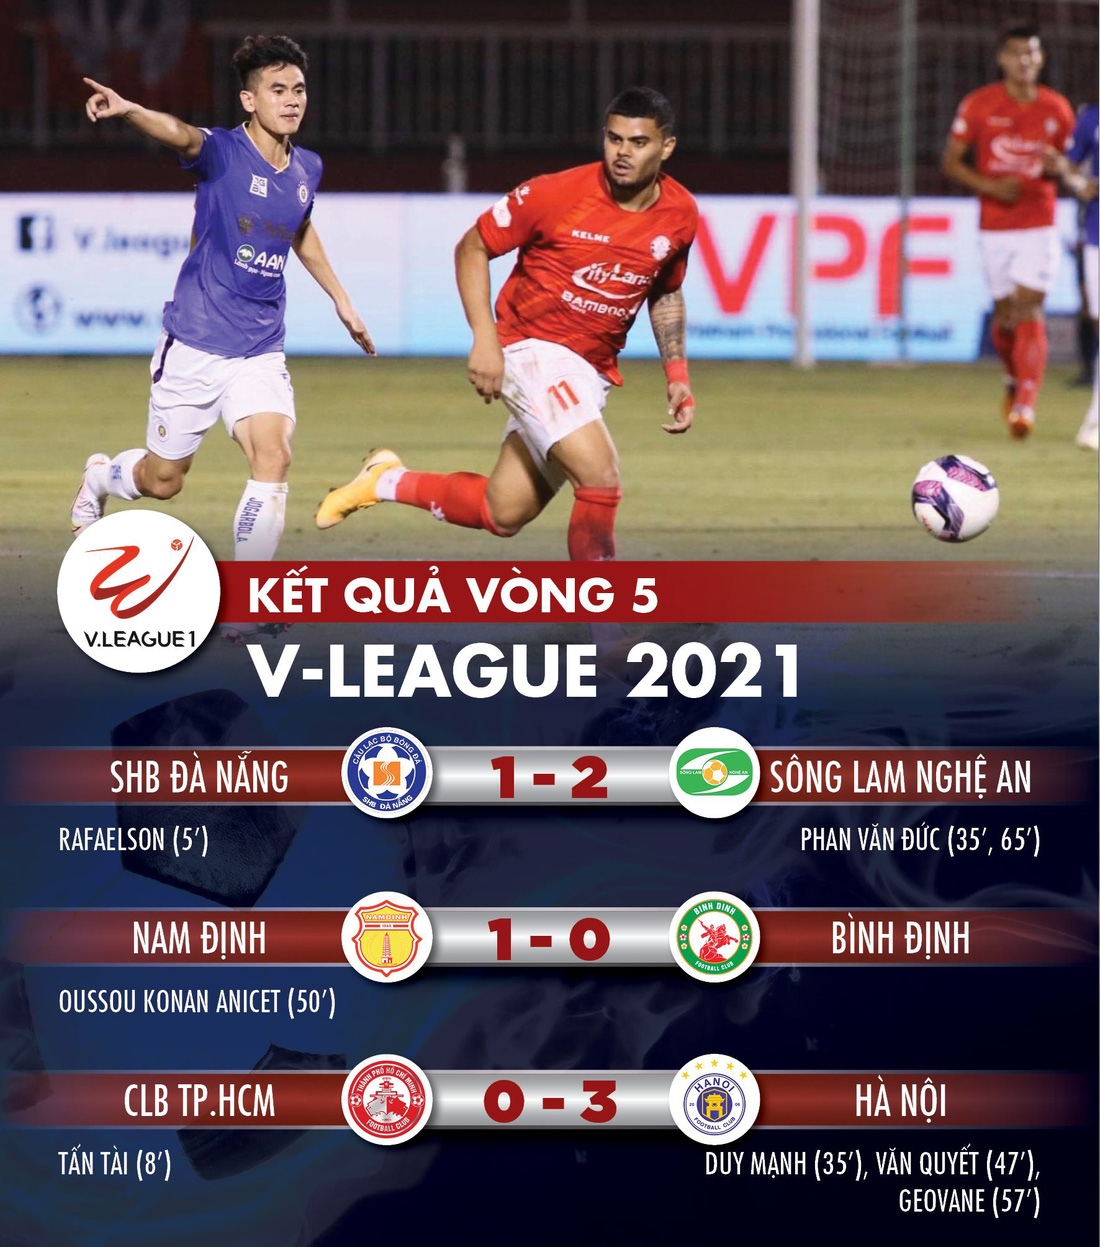 Kết quả, bảng xếp hạng vòng 5 V-League: CLB Hà Nội lên nhất bảng, CLB TP.HCM xuống hạng 12 - Ảnh 1.